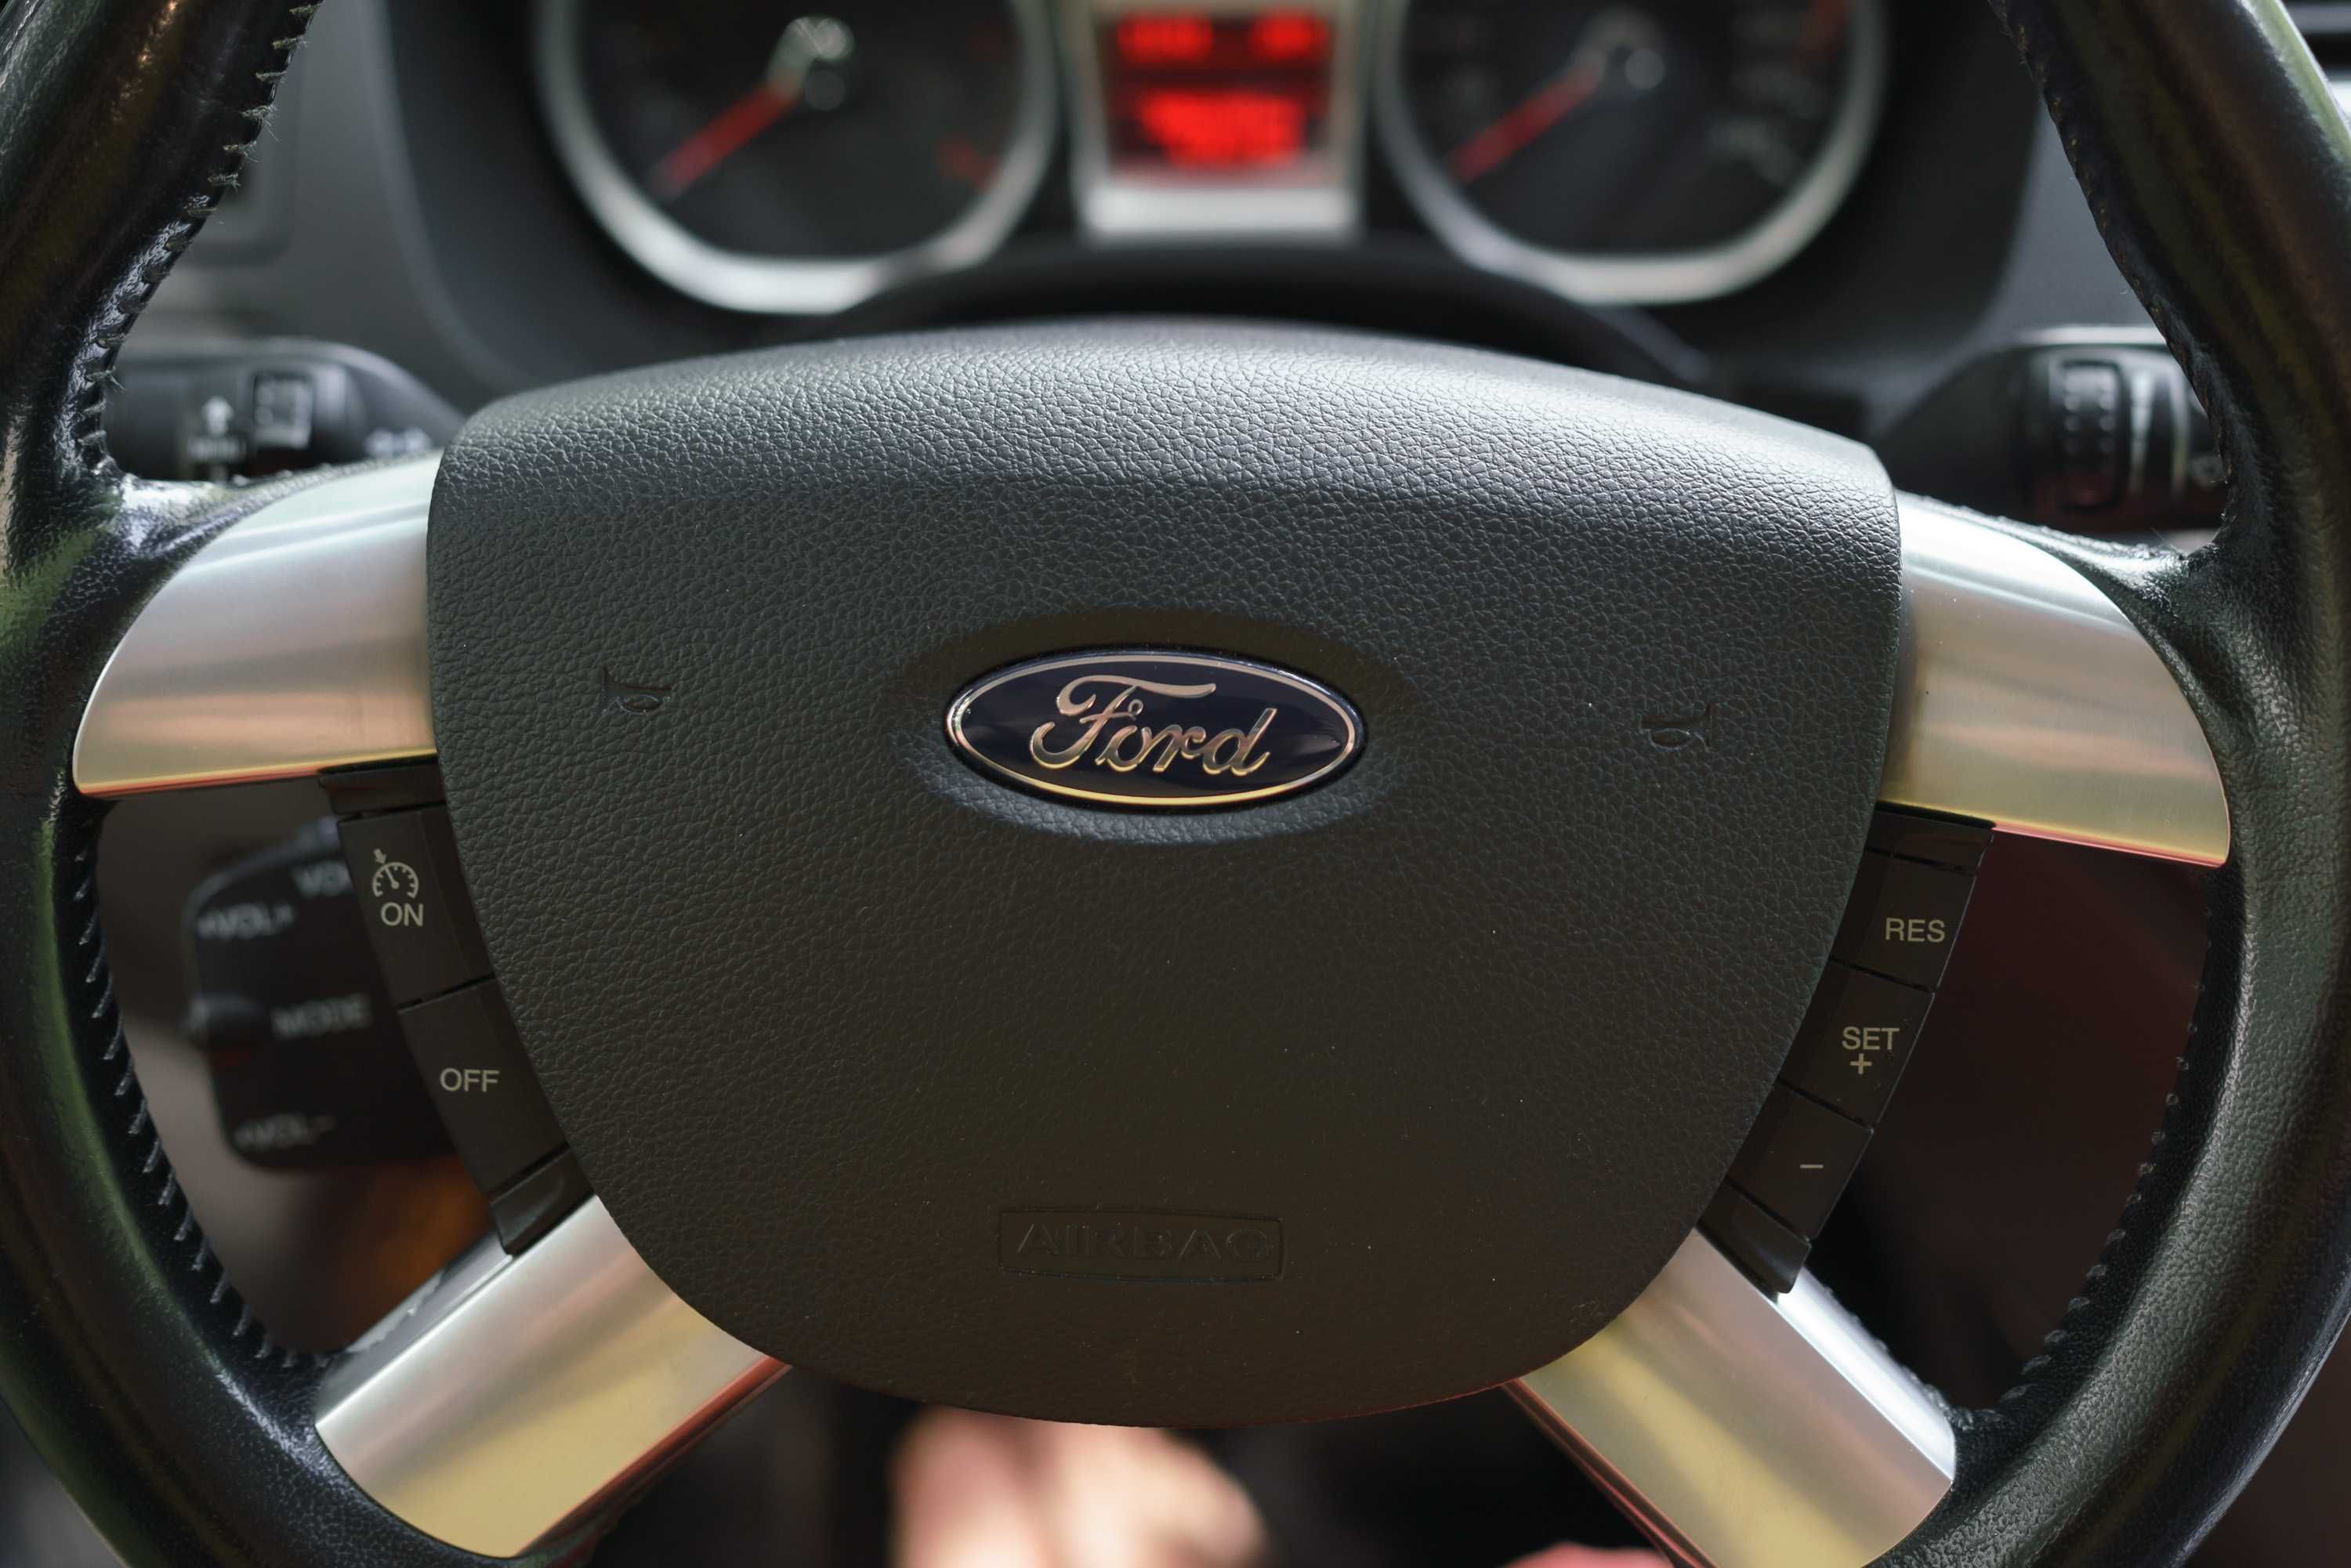 Ford Kuga 2012 Titanium в гарному стані, перший власник, з салону